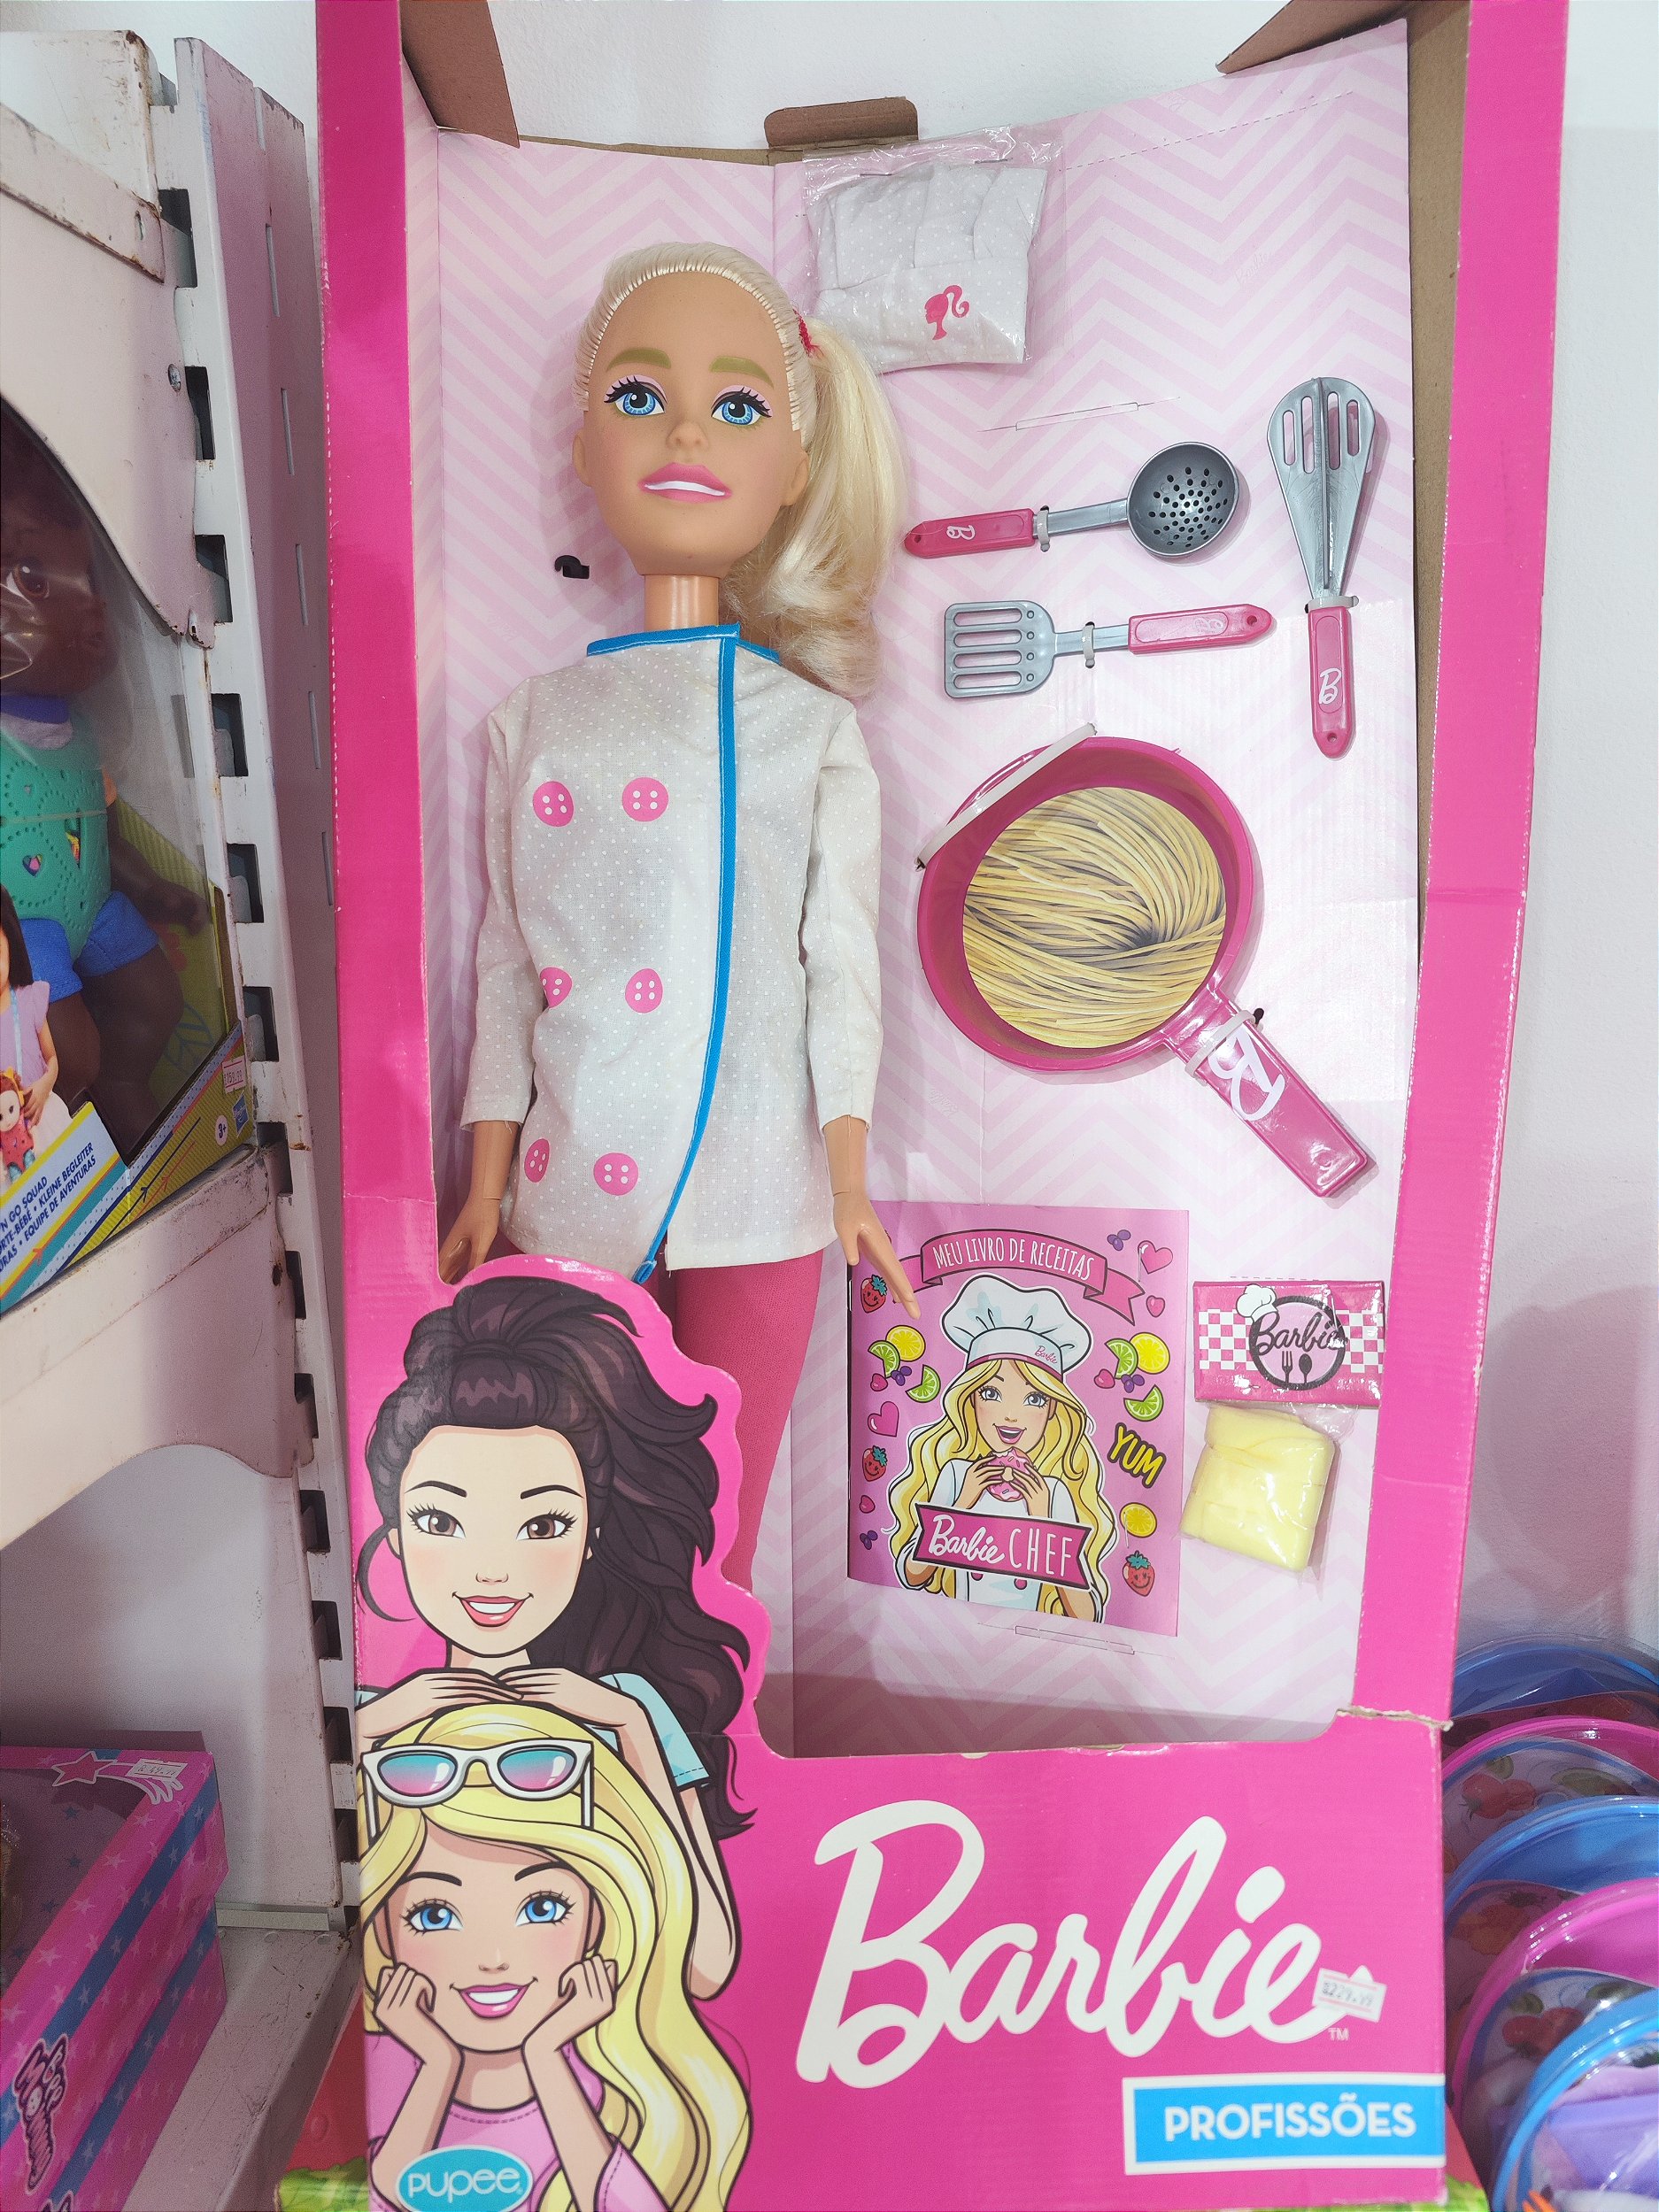 Jogos da Barbie de culinária - Jogue Jogos da Barbie de culinária gratis no